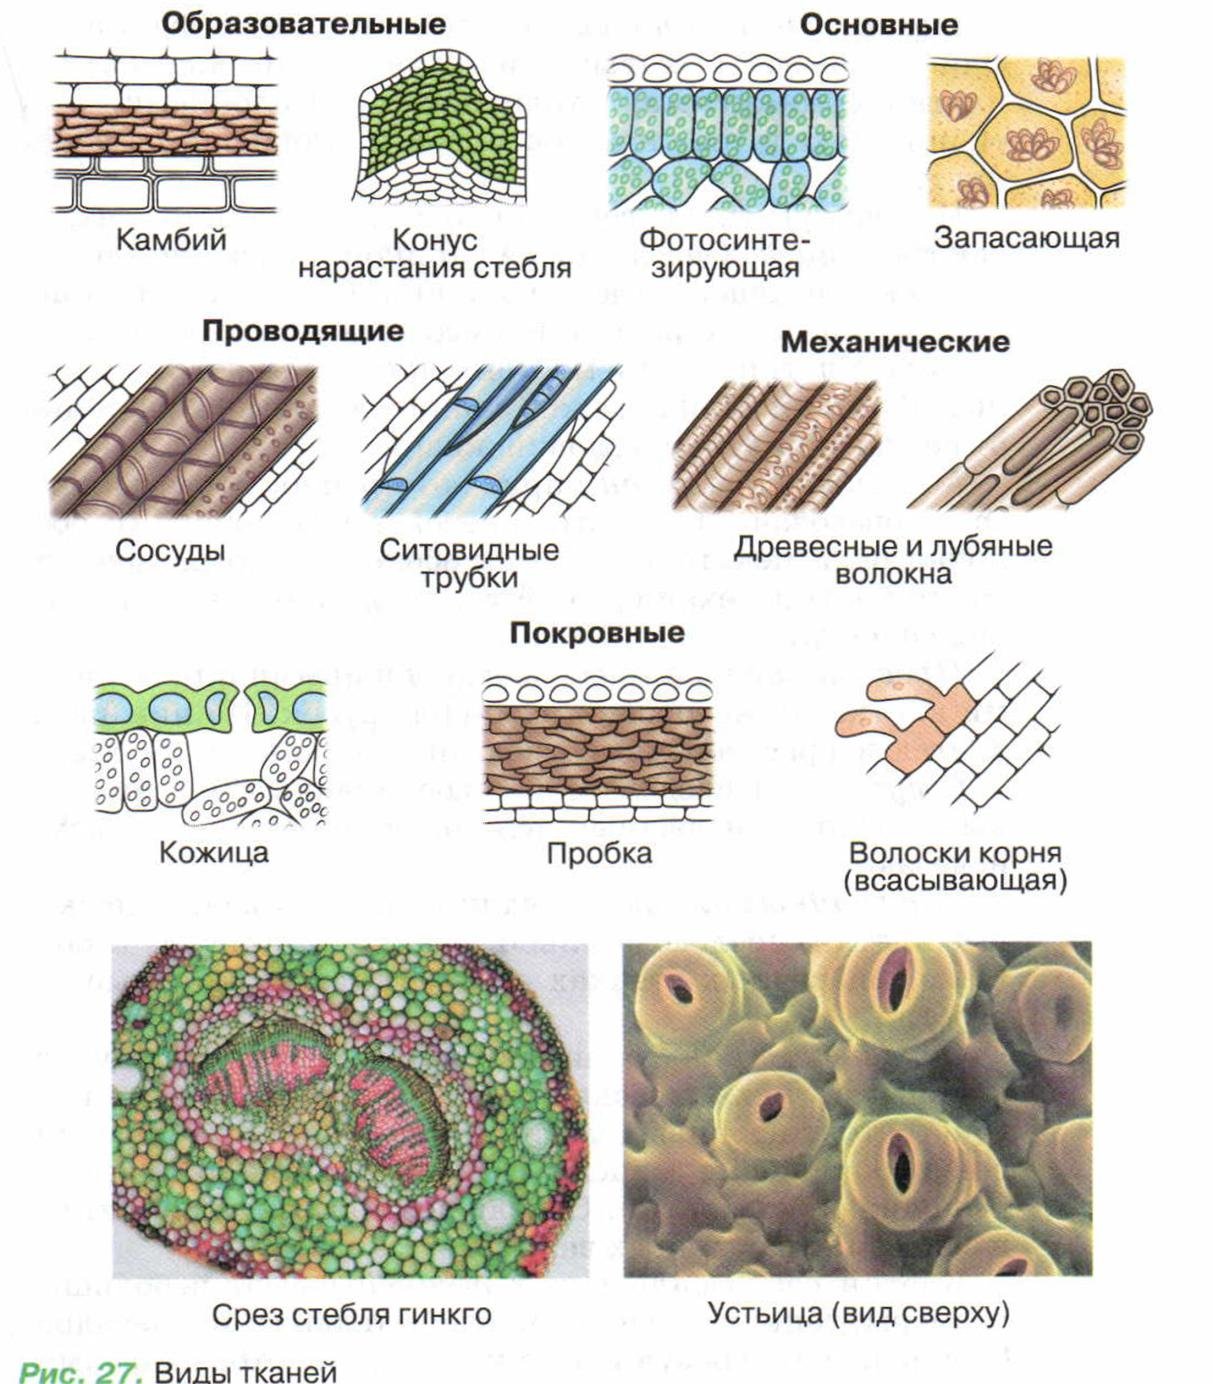 У каких растений появились ткани. Строение растительных тканей 6 класс биология. Клеточное строение основной ткани растений. Схема растительной ткани биология. Типы тканей растений и их функции.